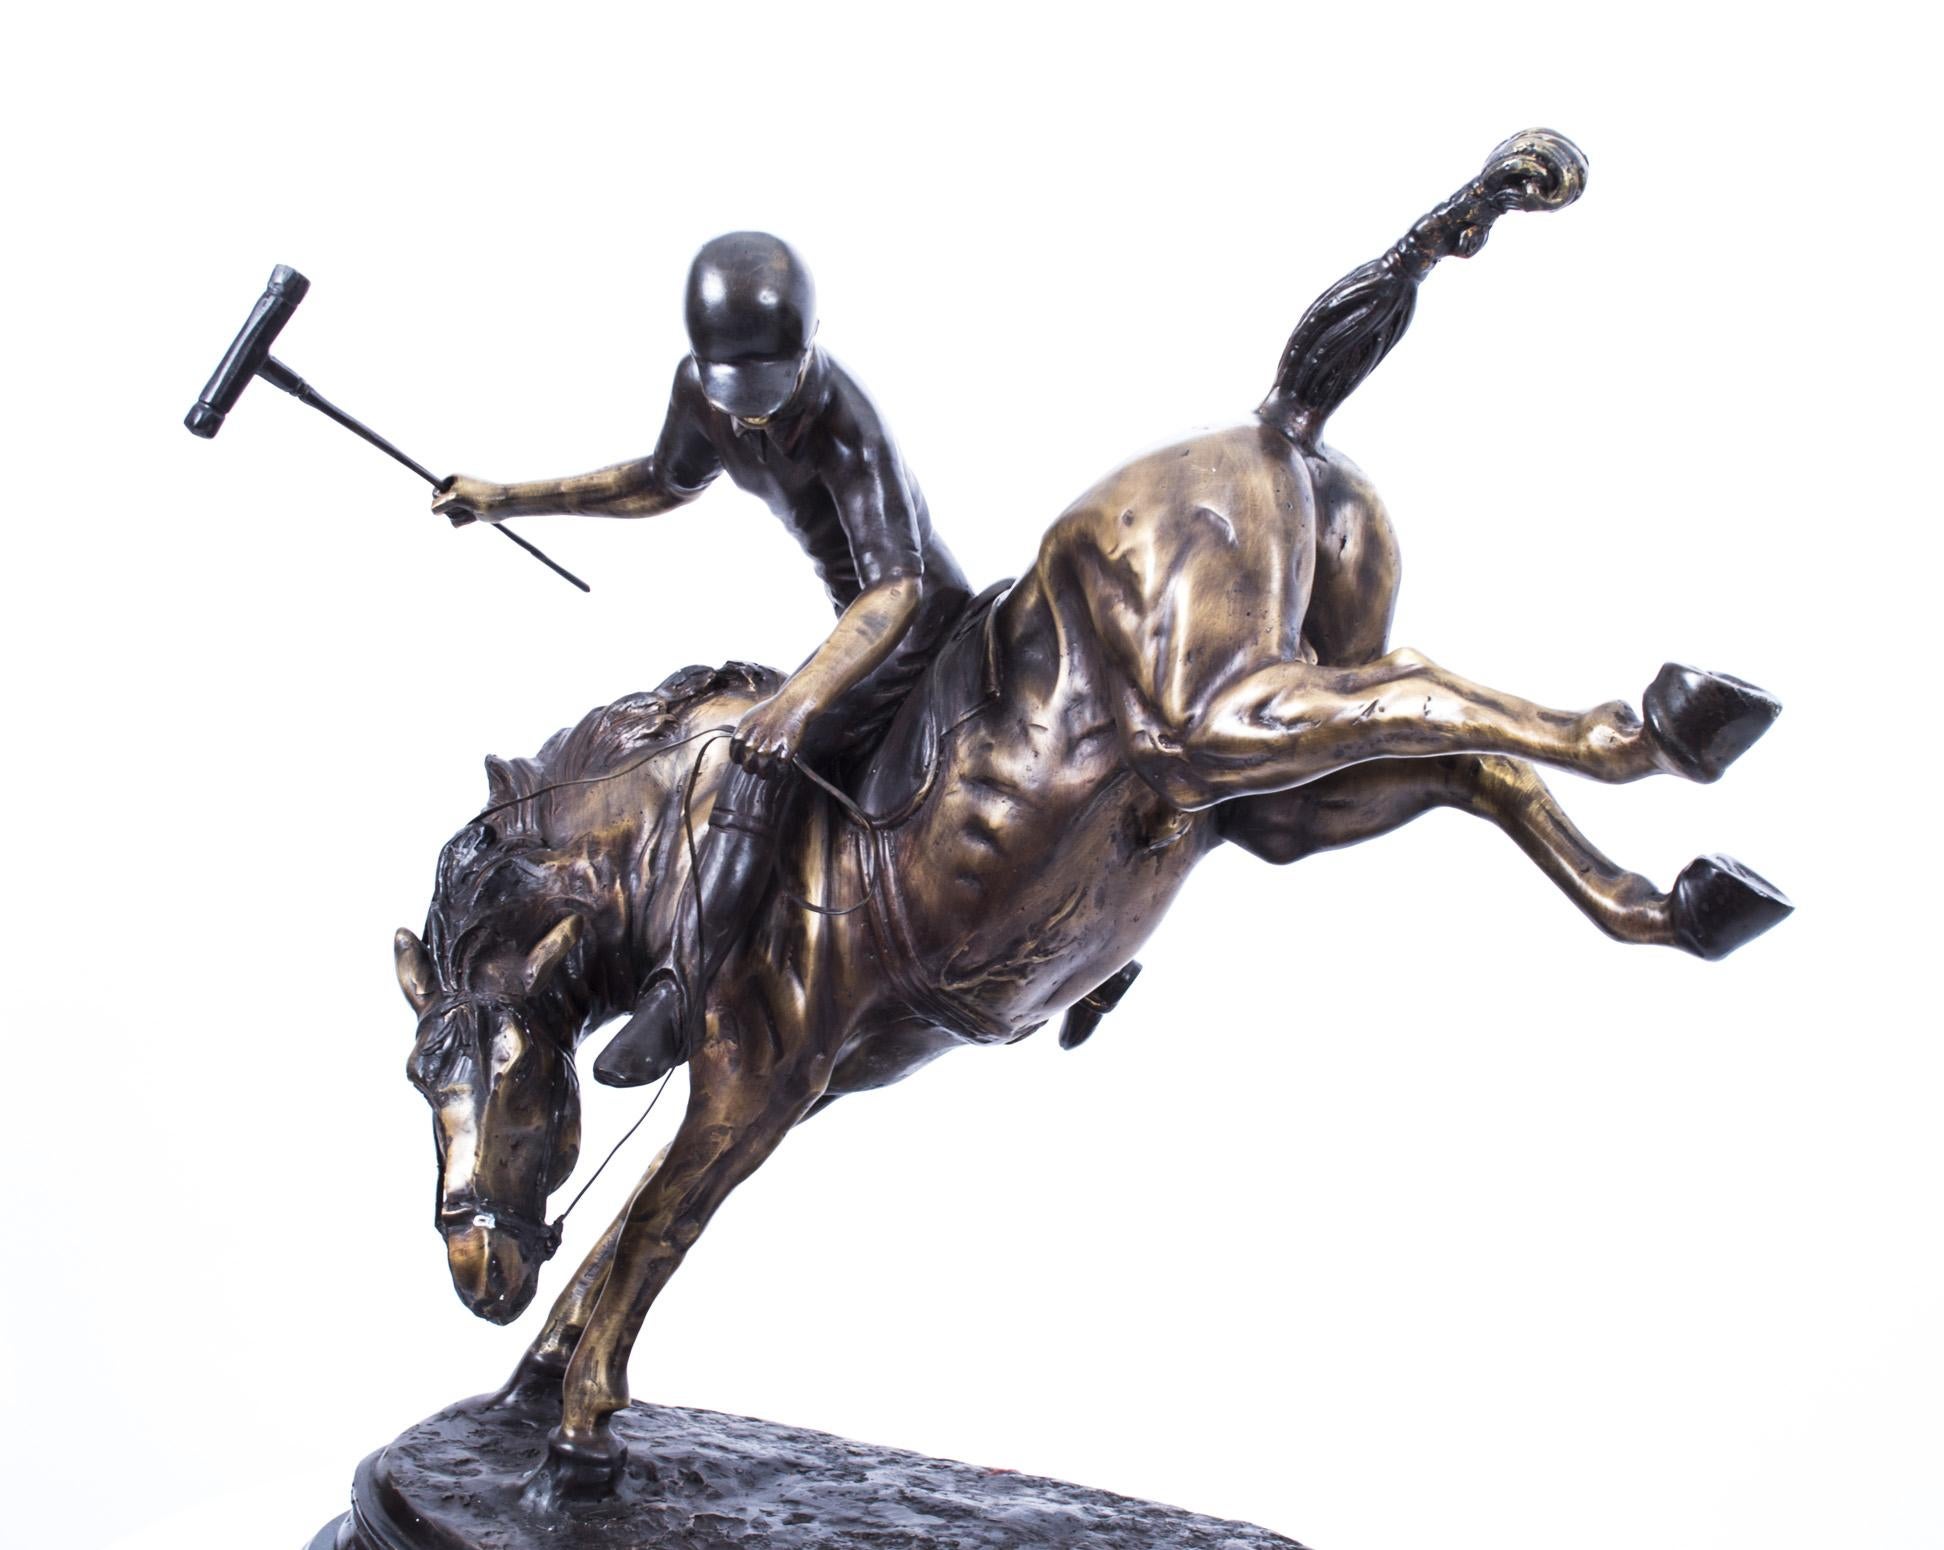 Une belle sculpture en bronze d'un joueur de polo en plein élan sur un cheval cabré, datant du dernier quart du 20e siècle.

L'artiste a capturé cette scène d'action de manière étonnante, avec les pattes arrière du cheval lancées en